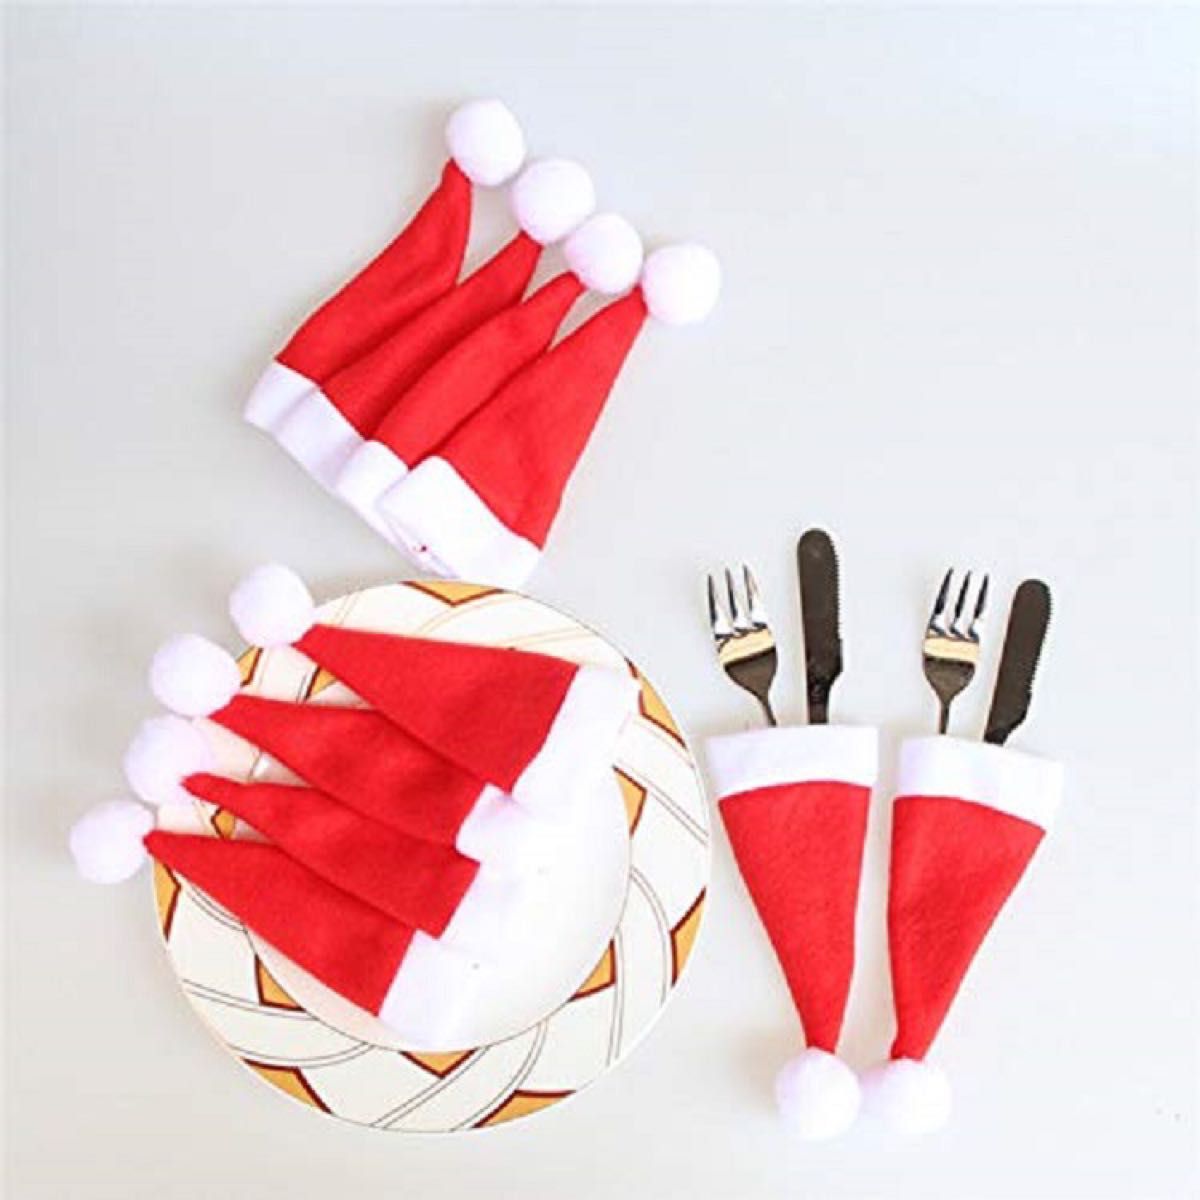 サンタ帽 カトラリーケース 10個セット スプーン フォーク クリスマス